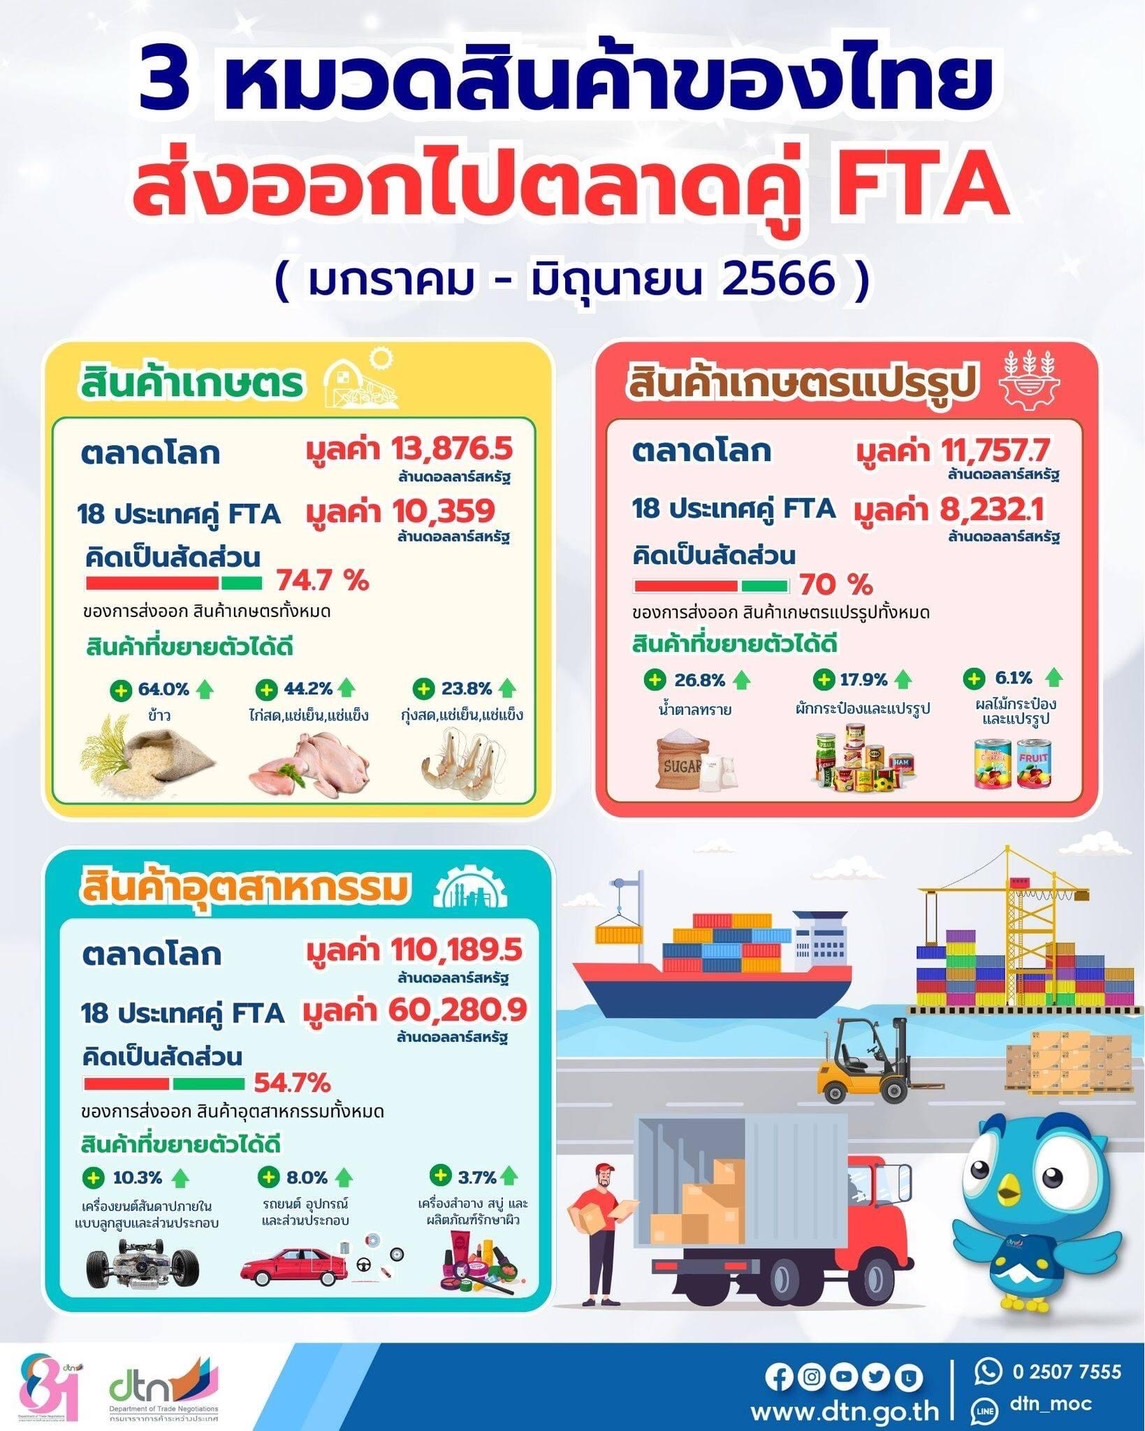 info การส่งออกสืนค้าเกษตร เกษตรแปรรูป อุตสาหกรรมของไทยไปตลาดคู่ FTA